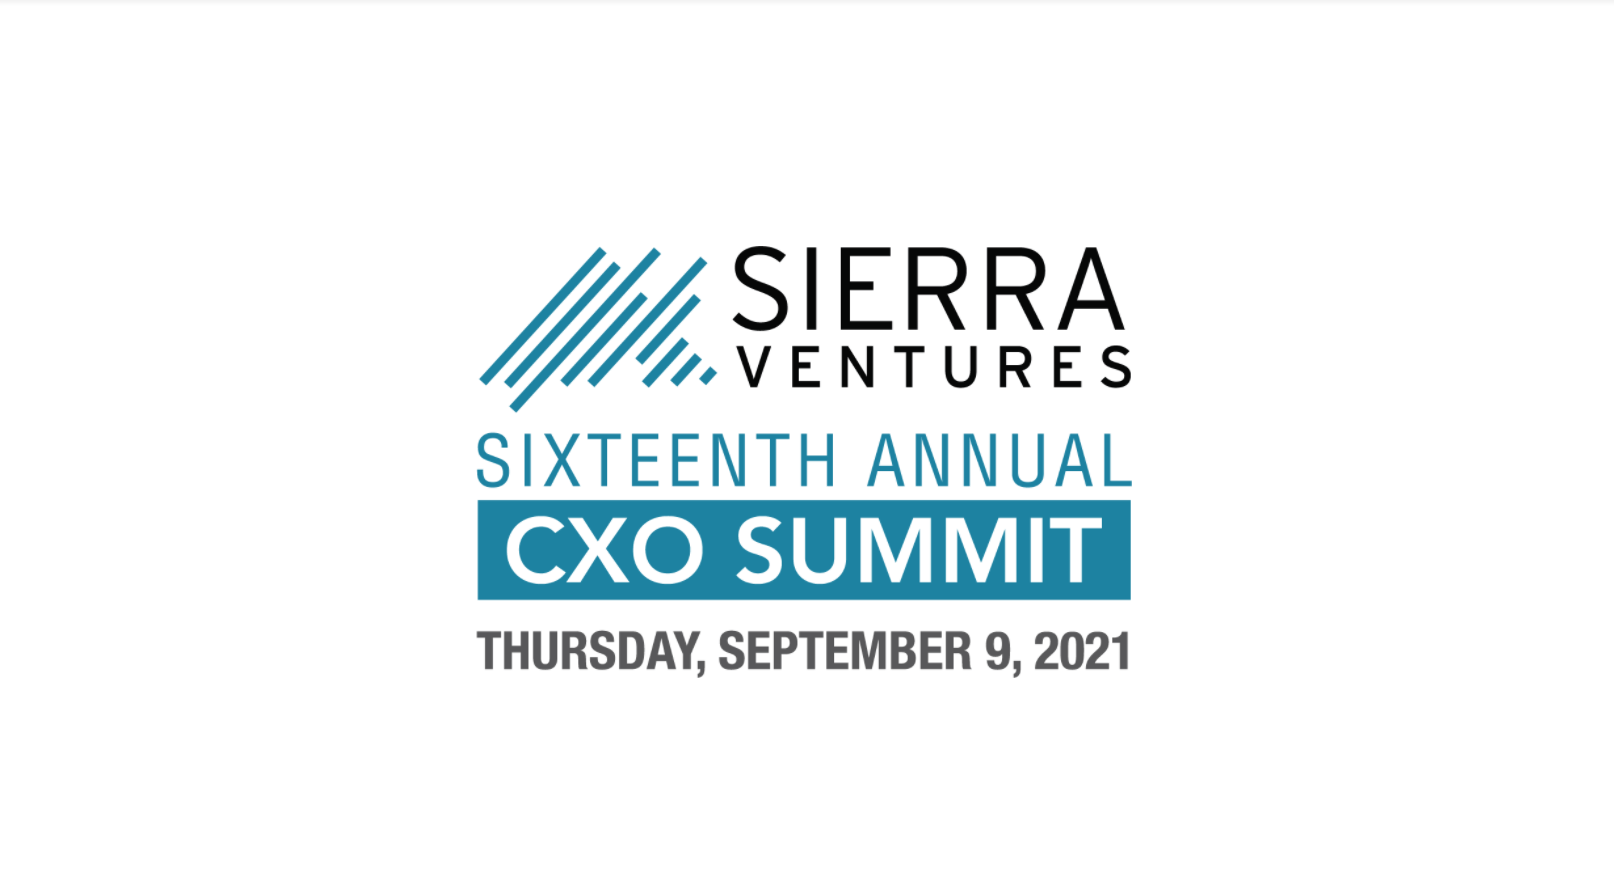 Sierra Ventures 16th Annual CXO Summit